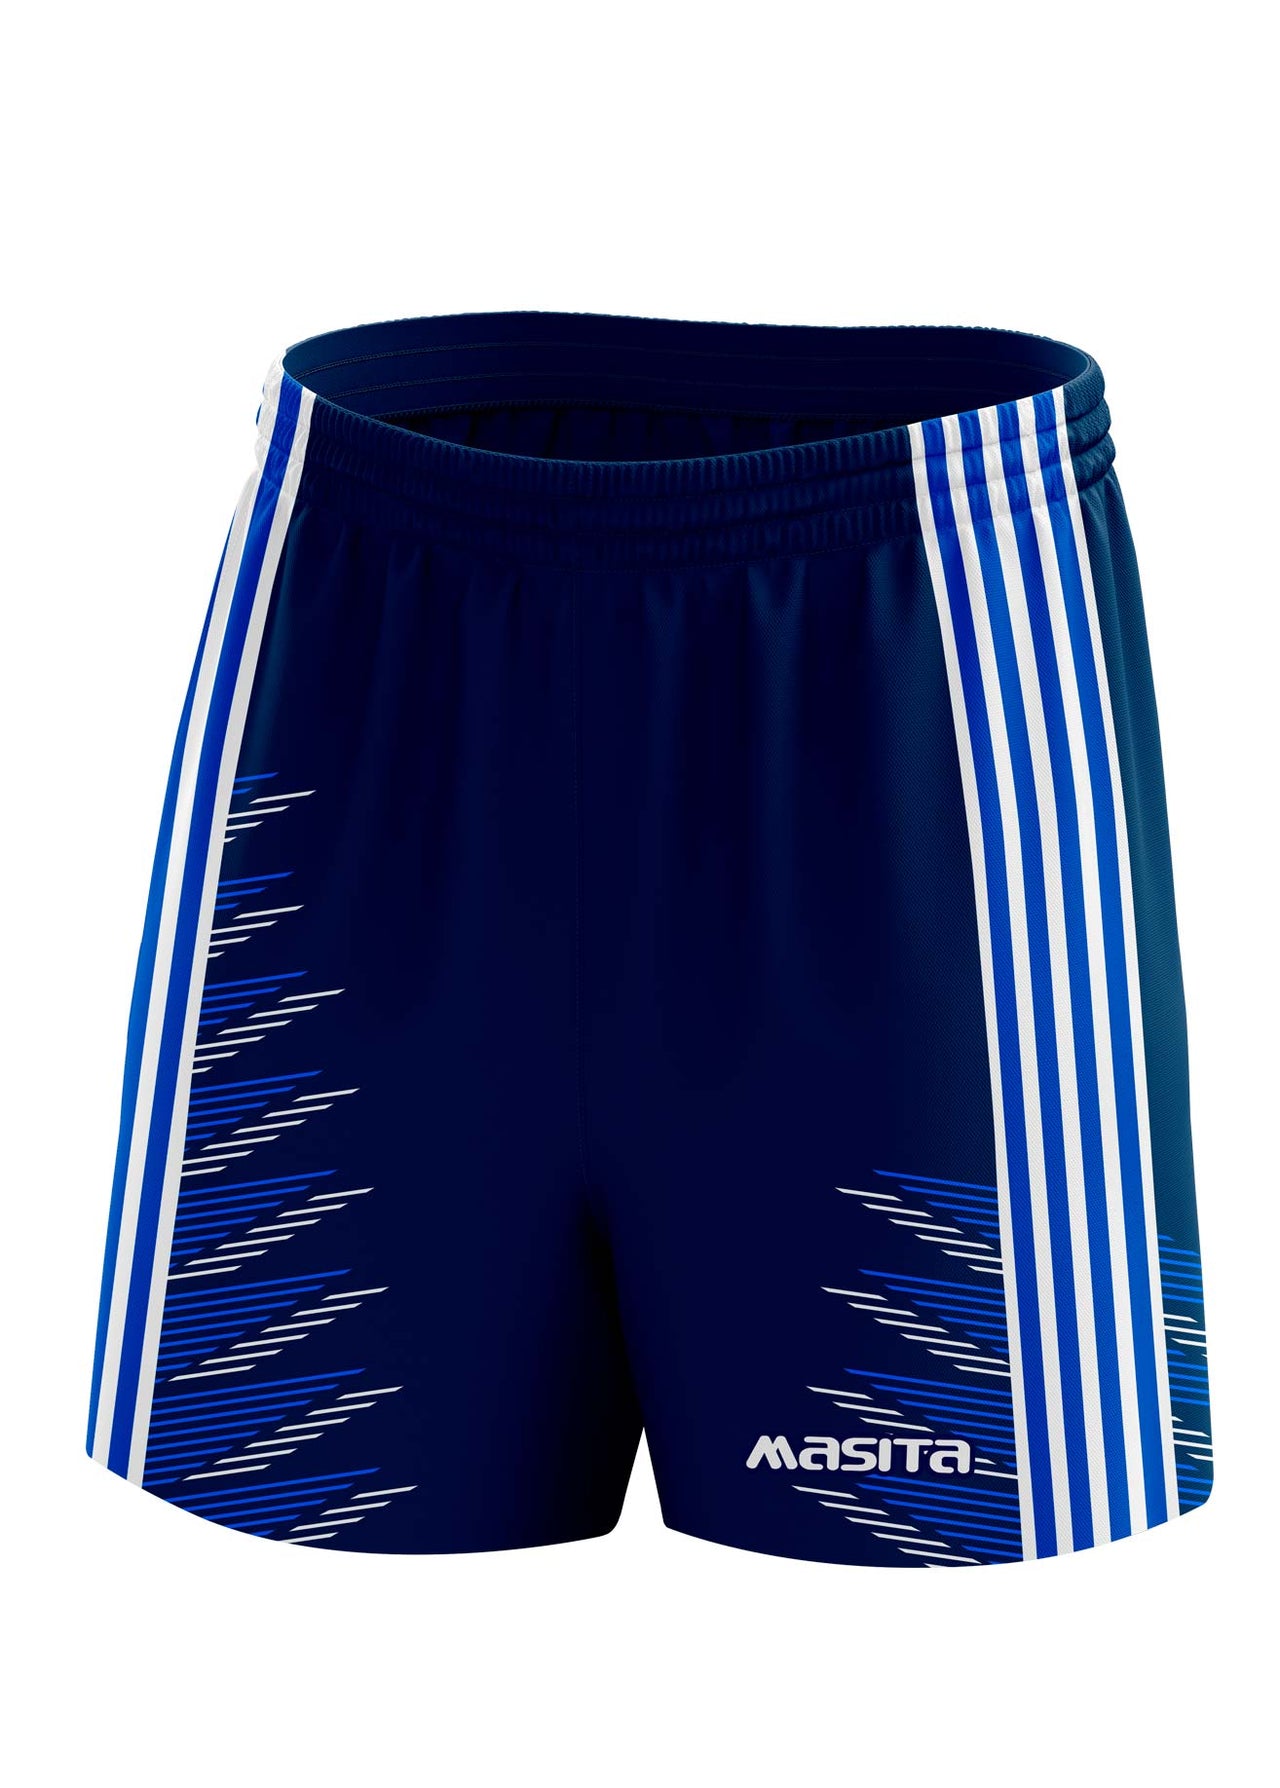 Hydro Gaelic Shorts Navy/Blue/White Kids